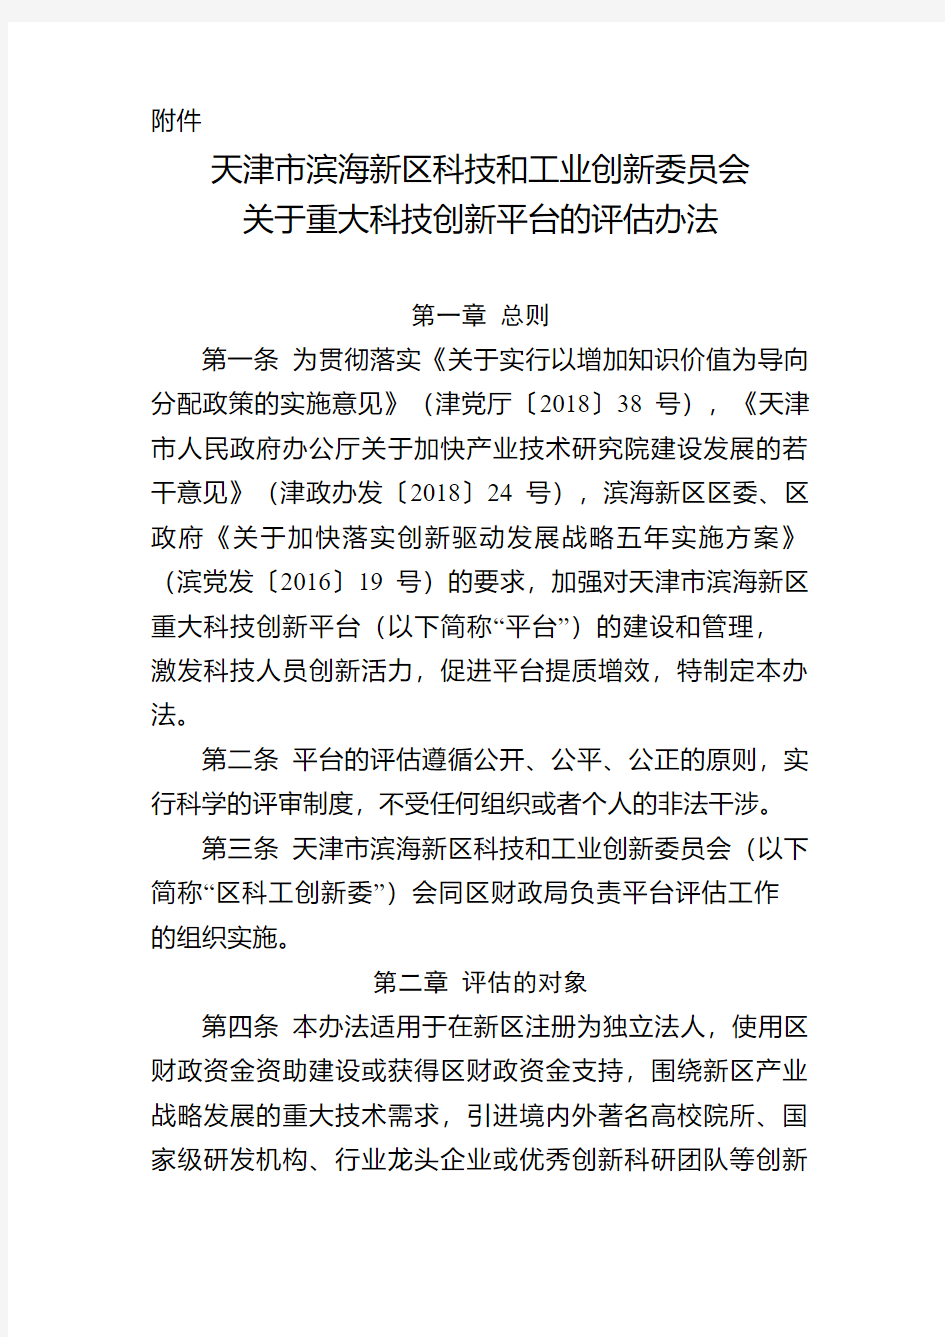 天津市滨海新区科技和工业创新委员会 关于印发《关于重大科技创新平台的 评估办法》的通知